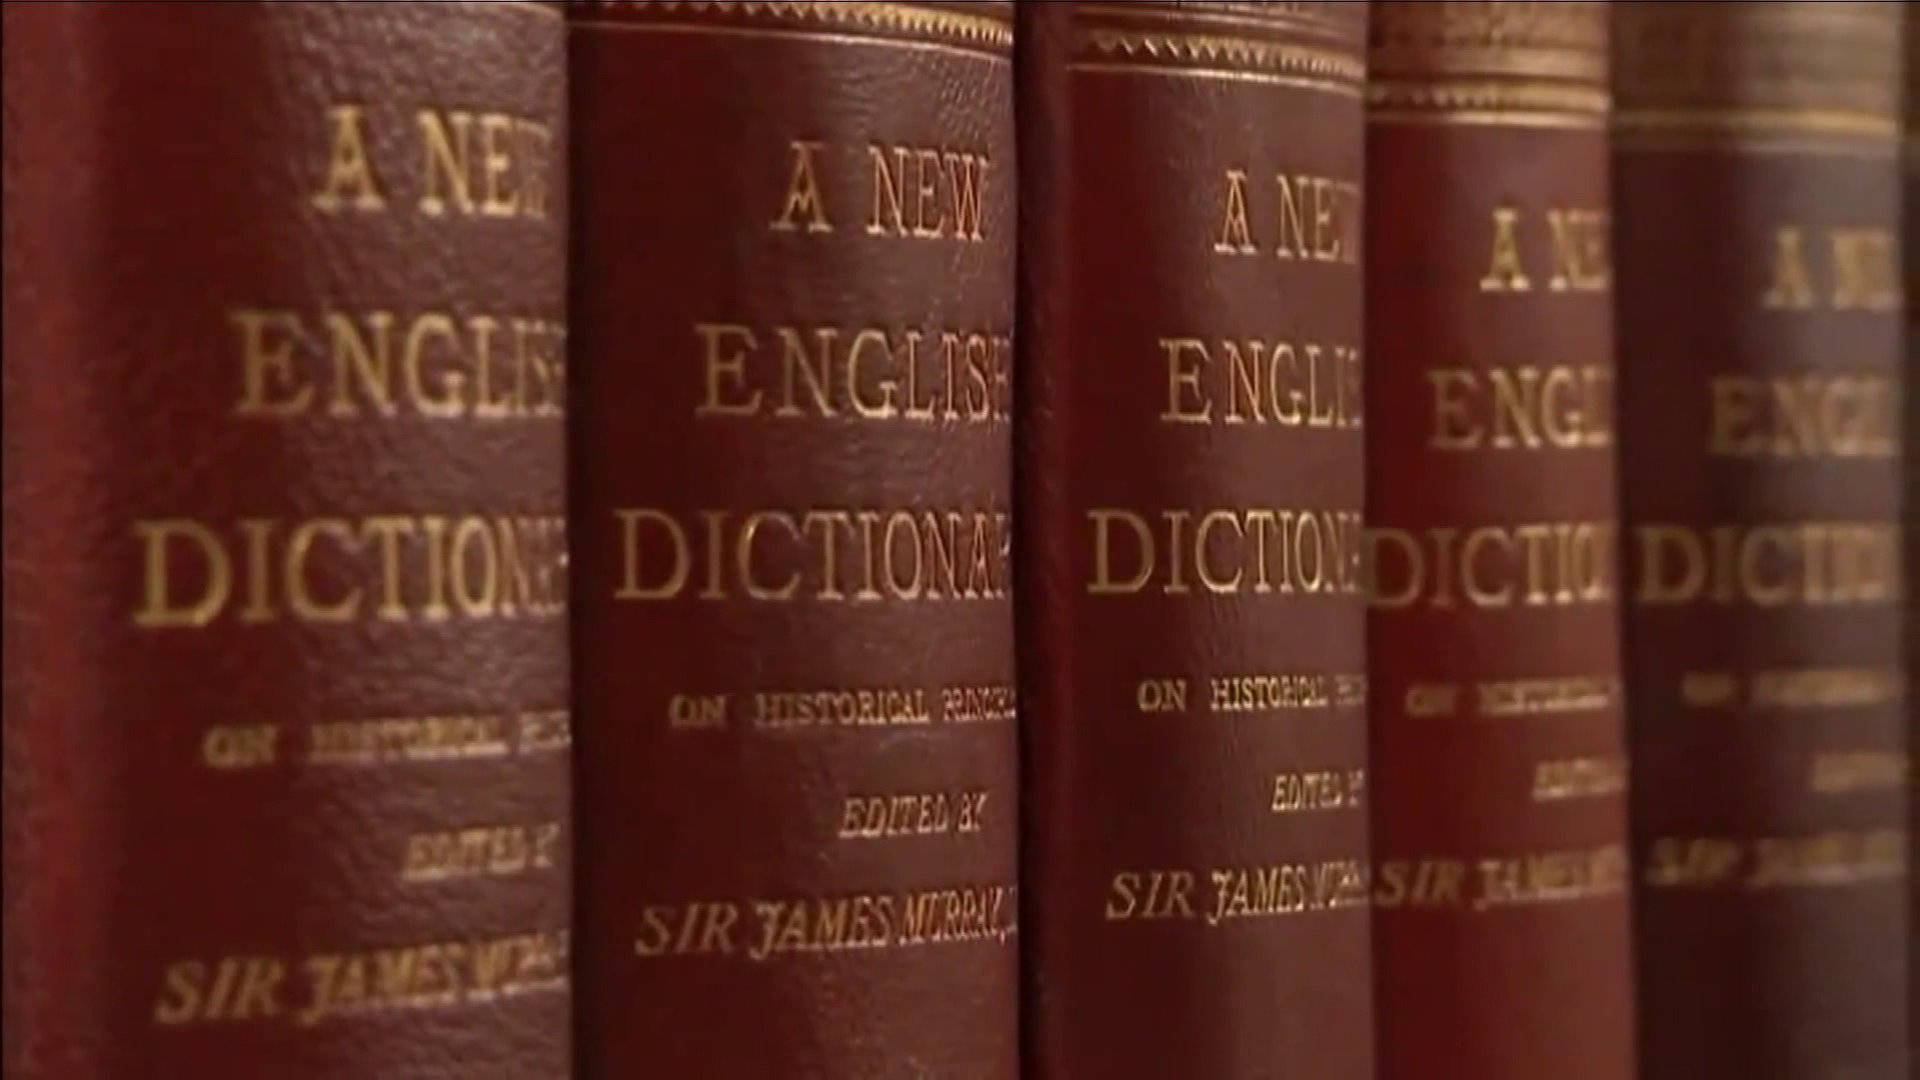 Maroon English Dictionaries